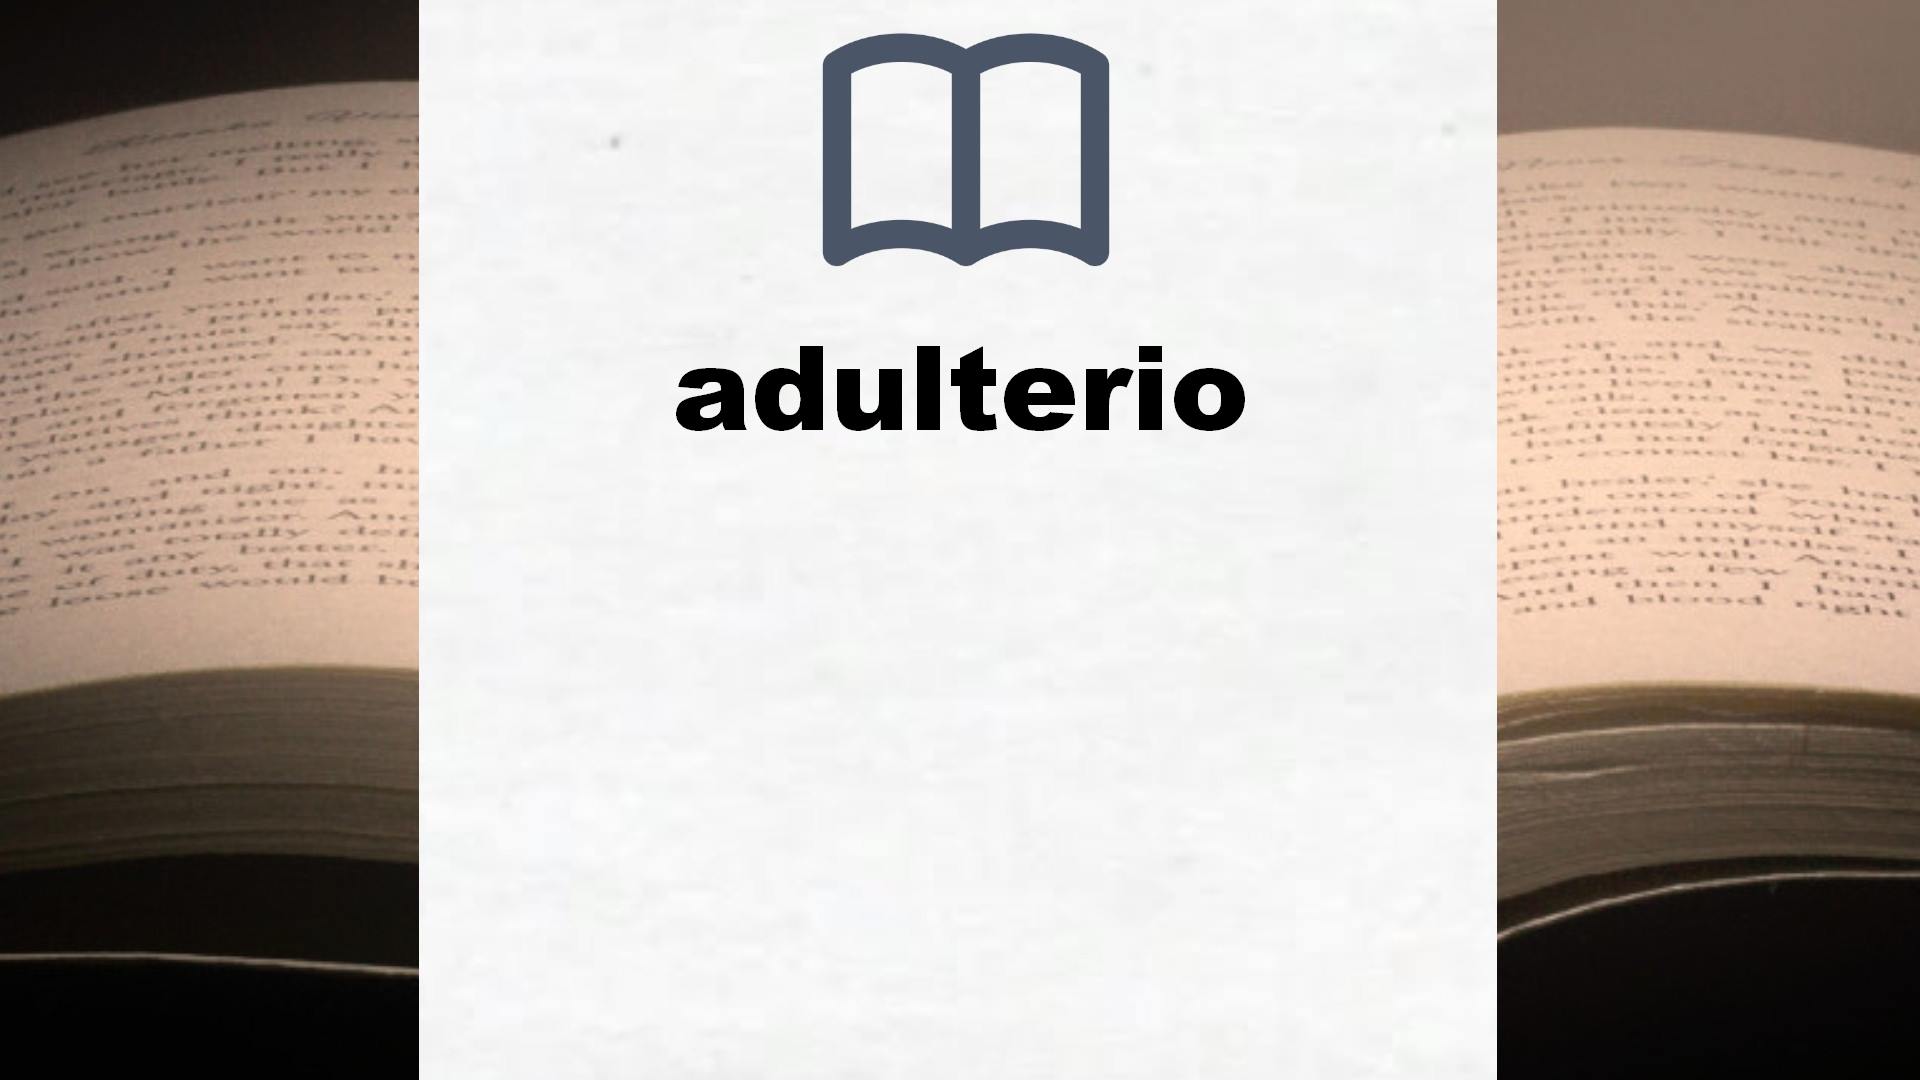 Libros sobre adulterio